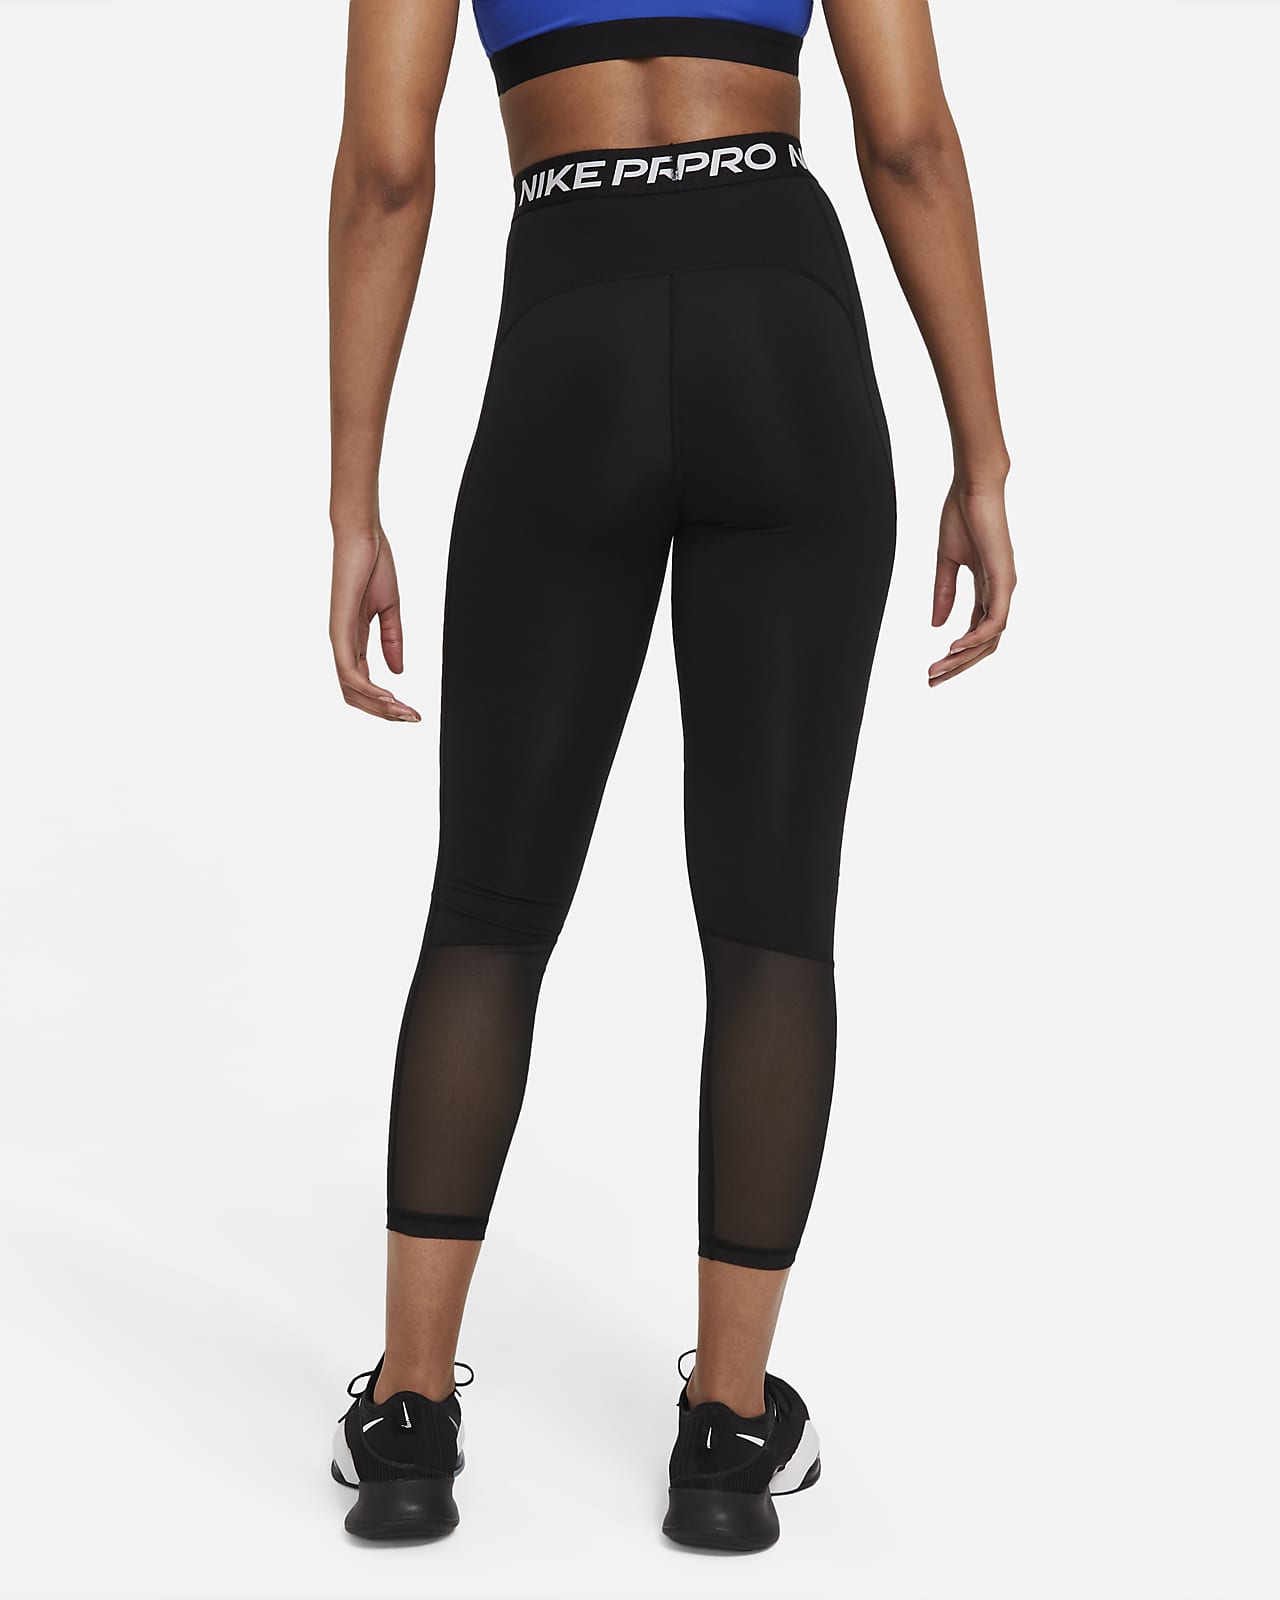 Nike Pro 365 Legging 7/8 Femme Noir DA0483 013 Noir S